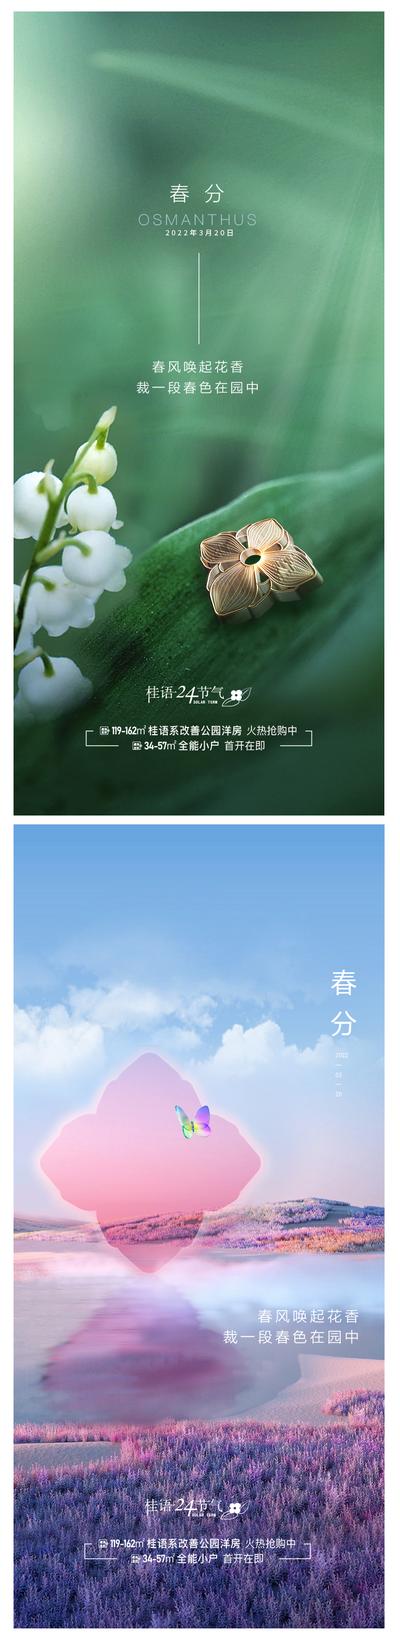 南门网 广告 海报 节日 春分 春天 春日 清新 自然 简约